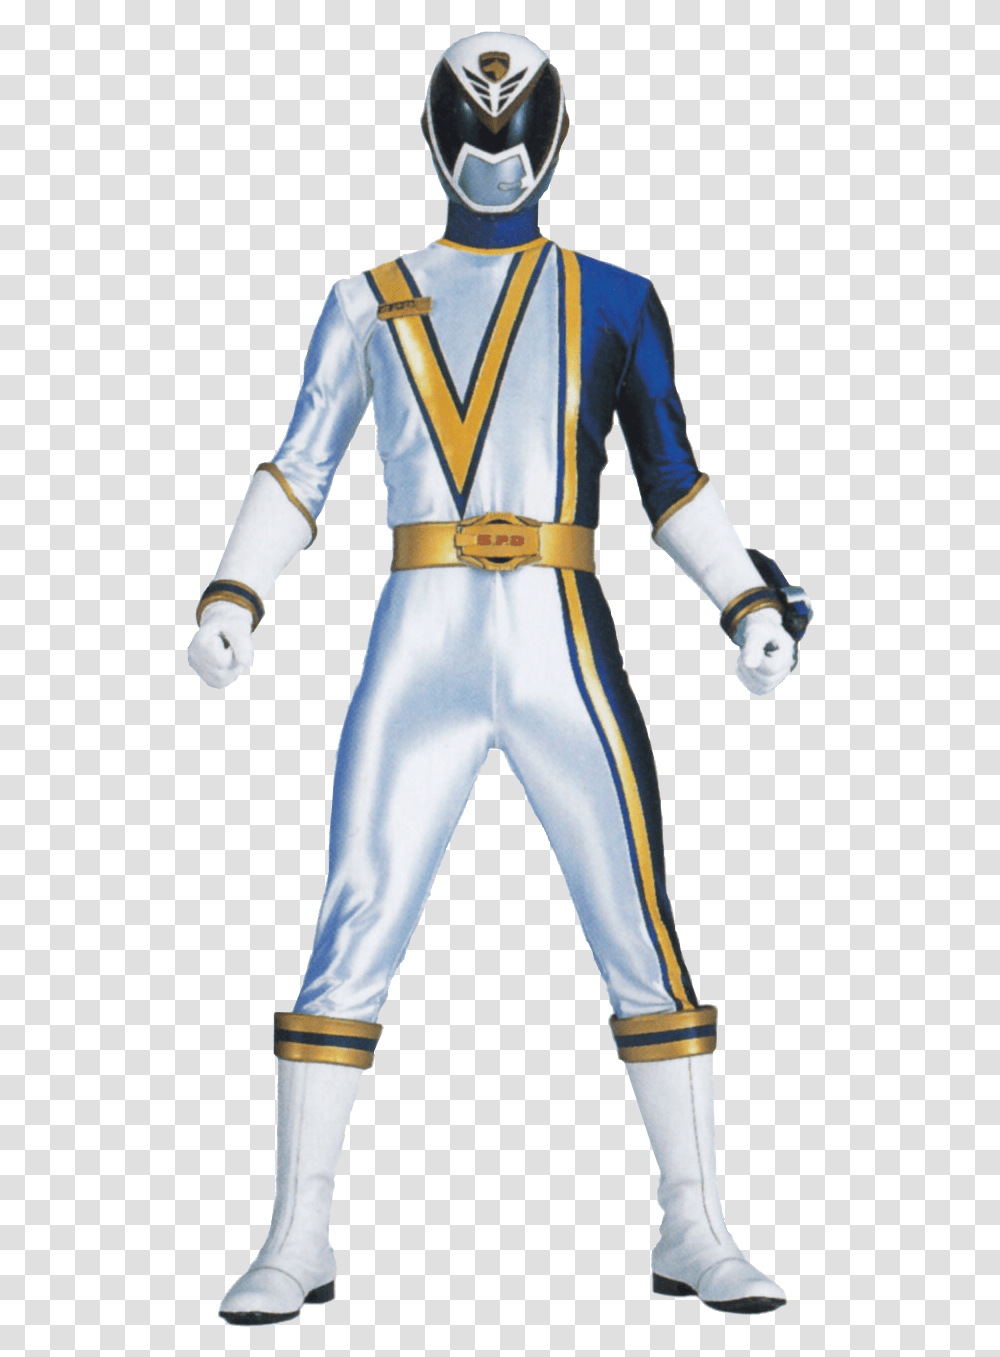 Power Rangers Spd White Ranger Download White Power Ranger Spd, Person, Helmet, Costume Transparent Png